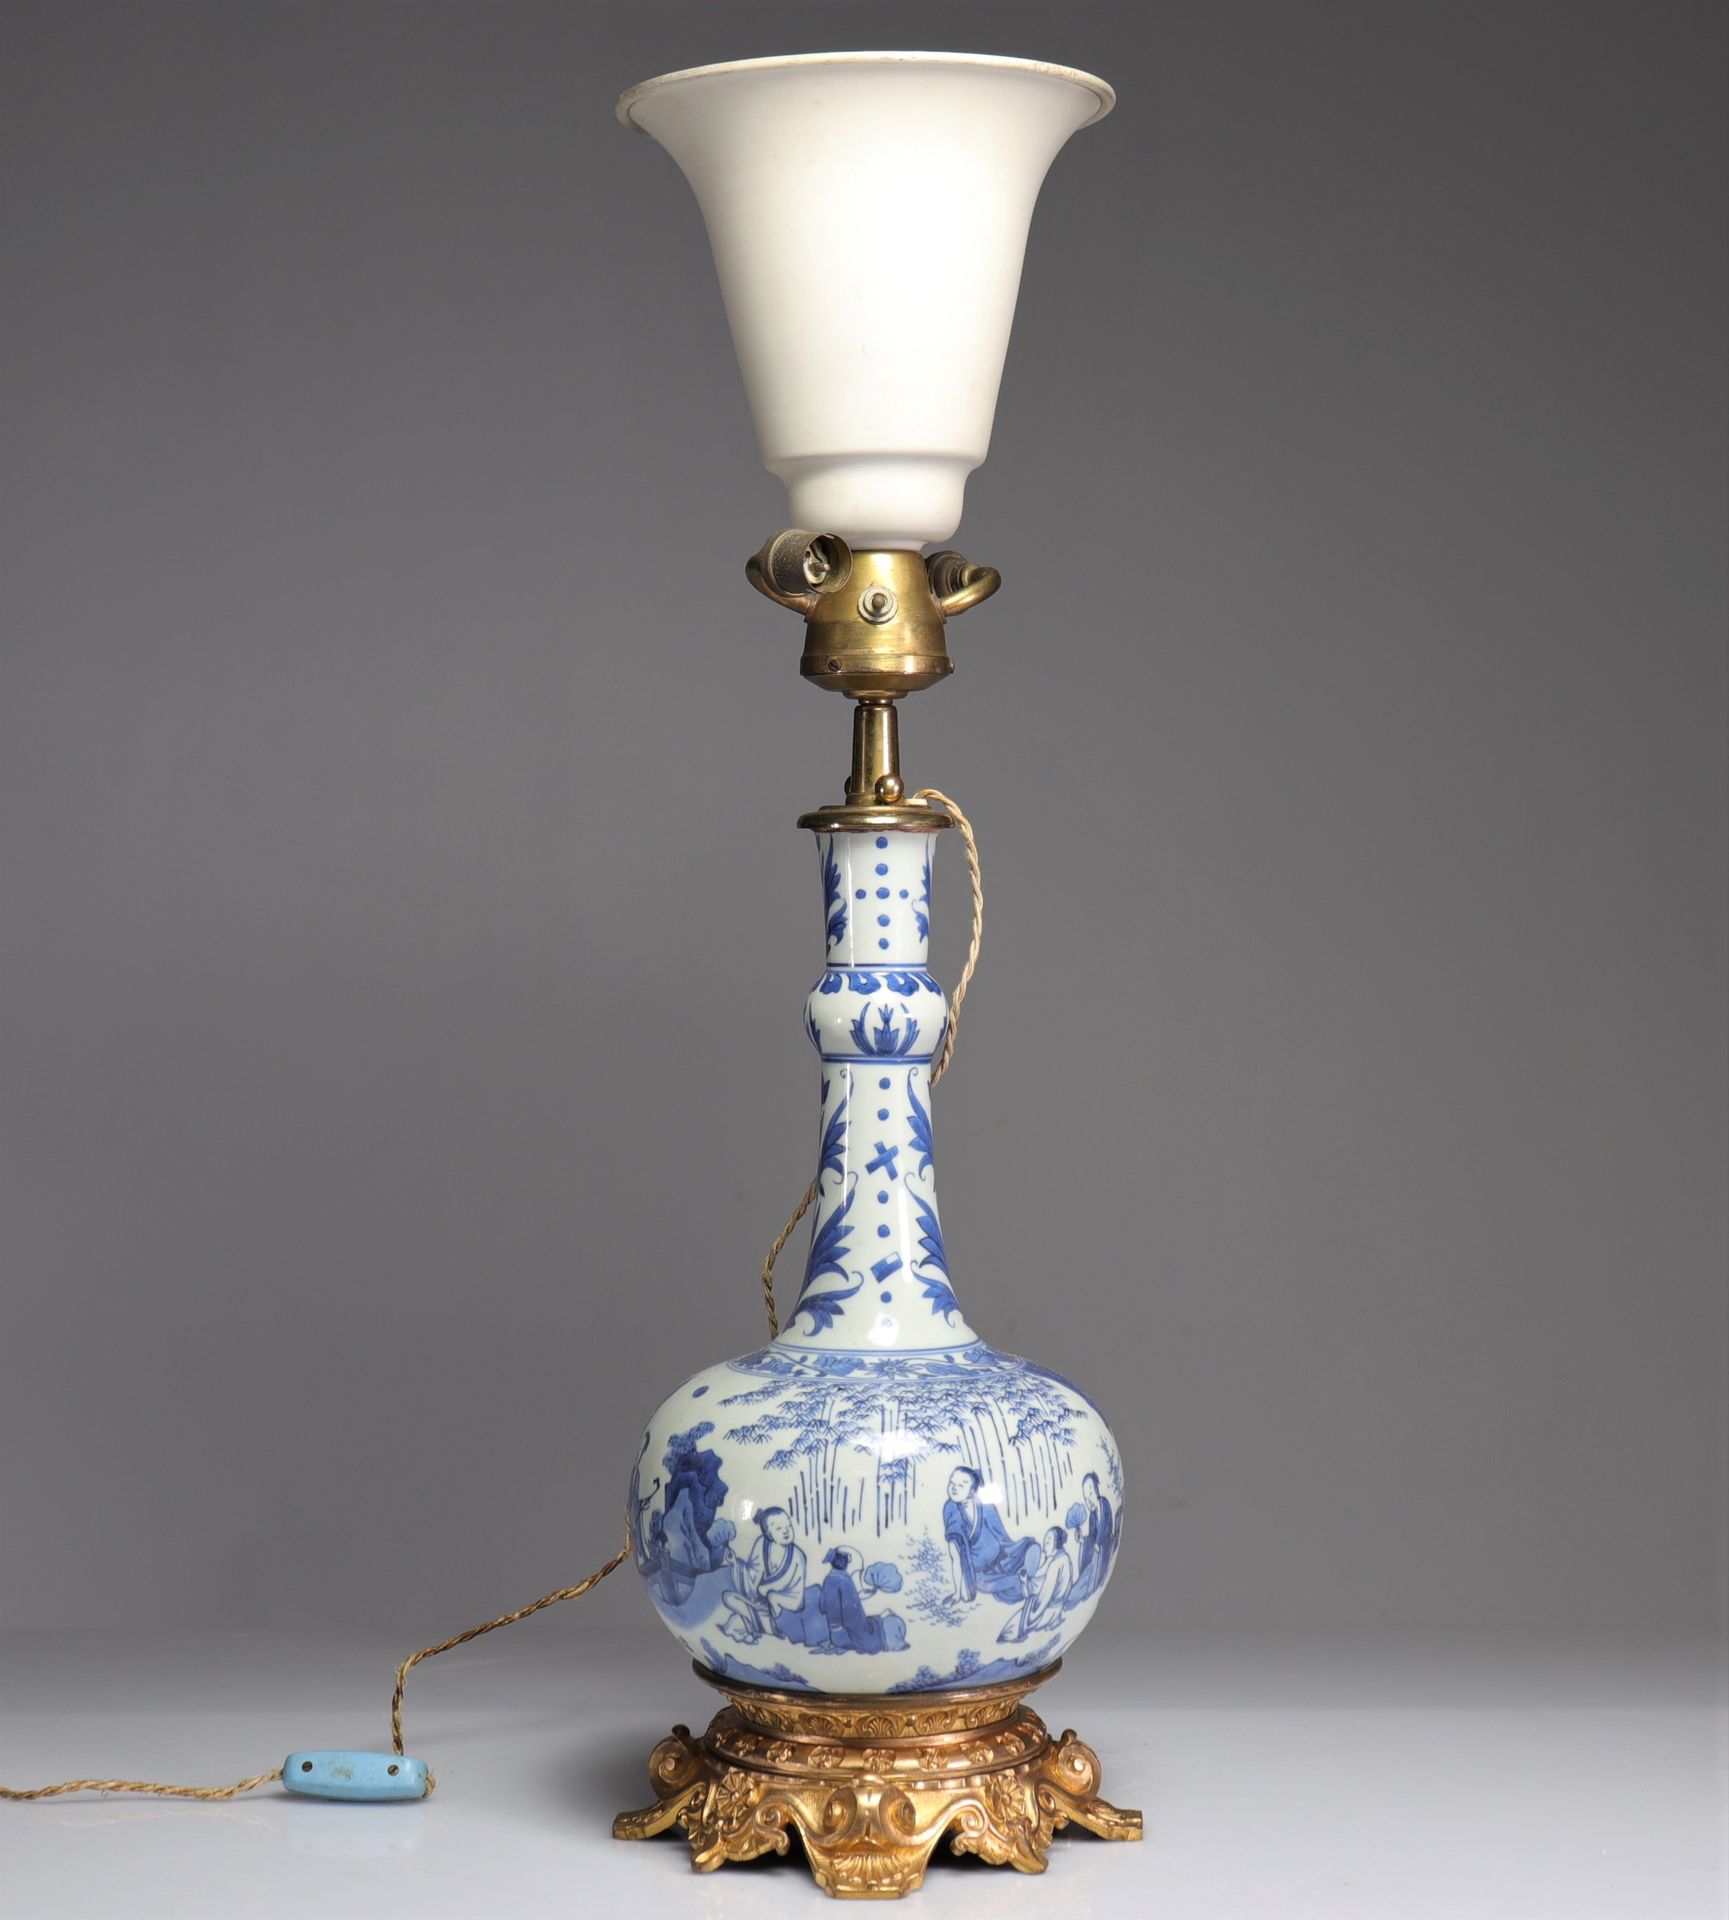 Null lámpara de porcelana blanco-azul, periodo de transición
Peso: 4,90 kg
Regió&hellip;